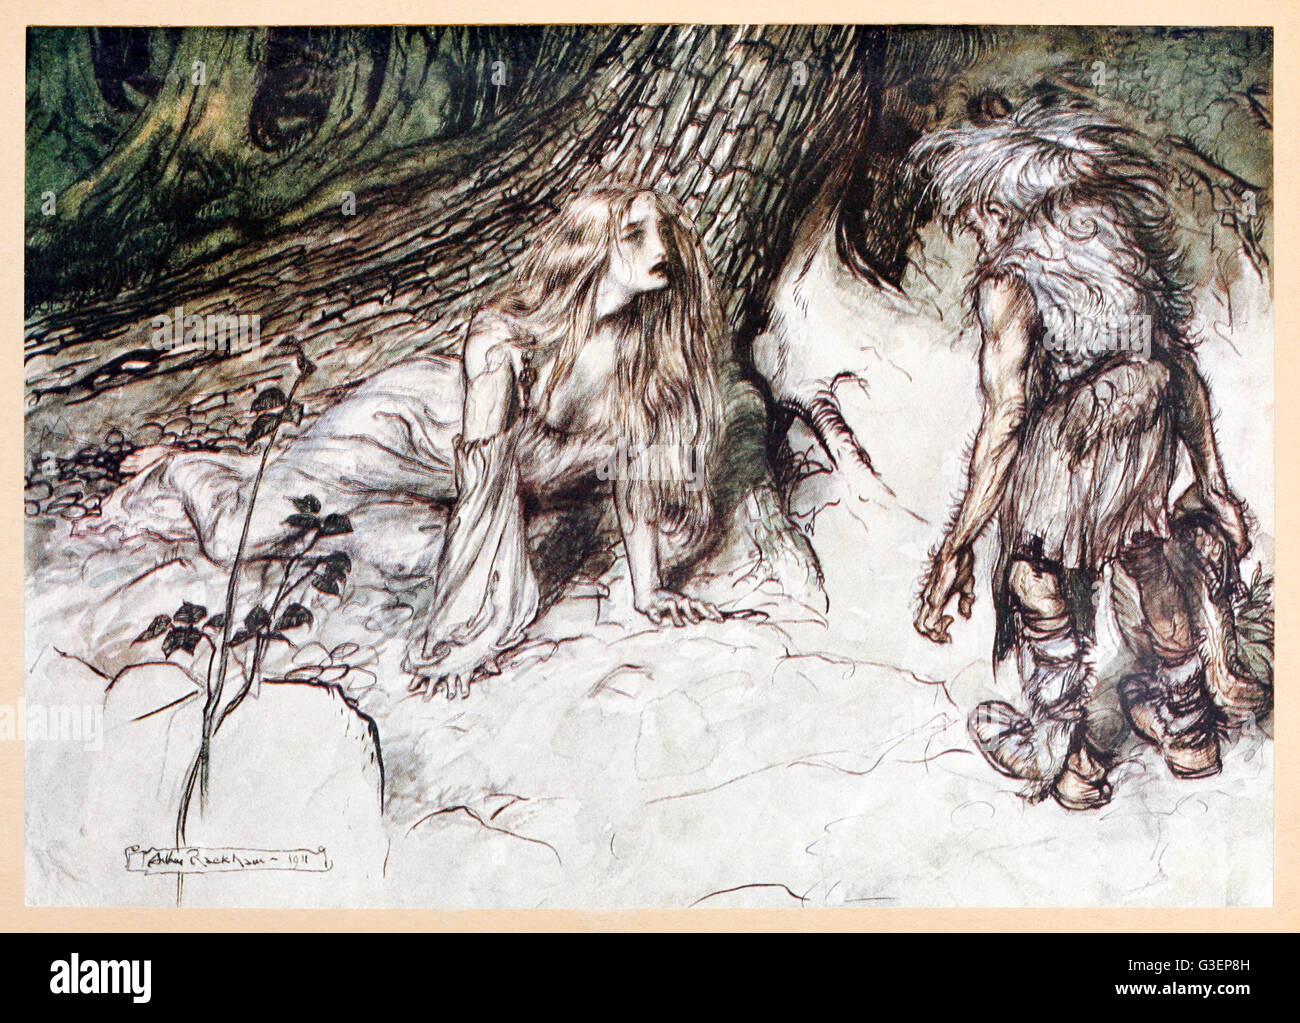 "Mime conclut la mère de Siegried dans la forêt" de Siegfried "& Le Crépuscule des dieux' illustré par Arthur Rackham (1867-1939). Voir la description pour plus d'informations. Banque D'Images